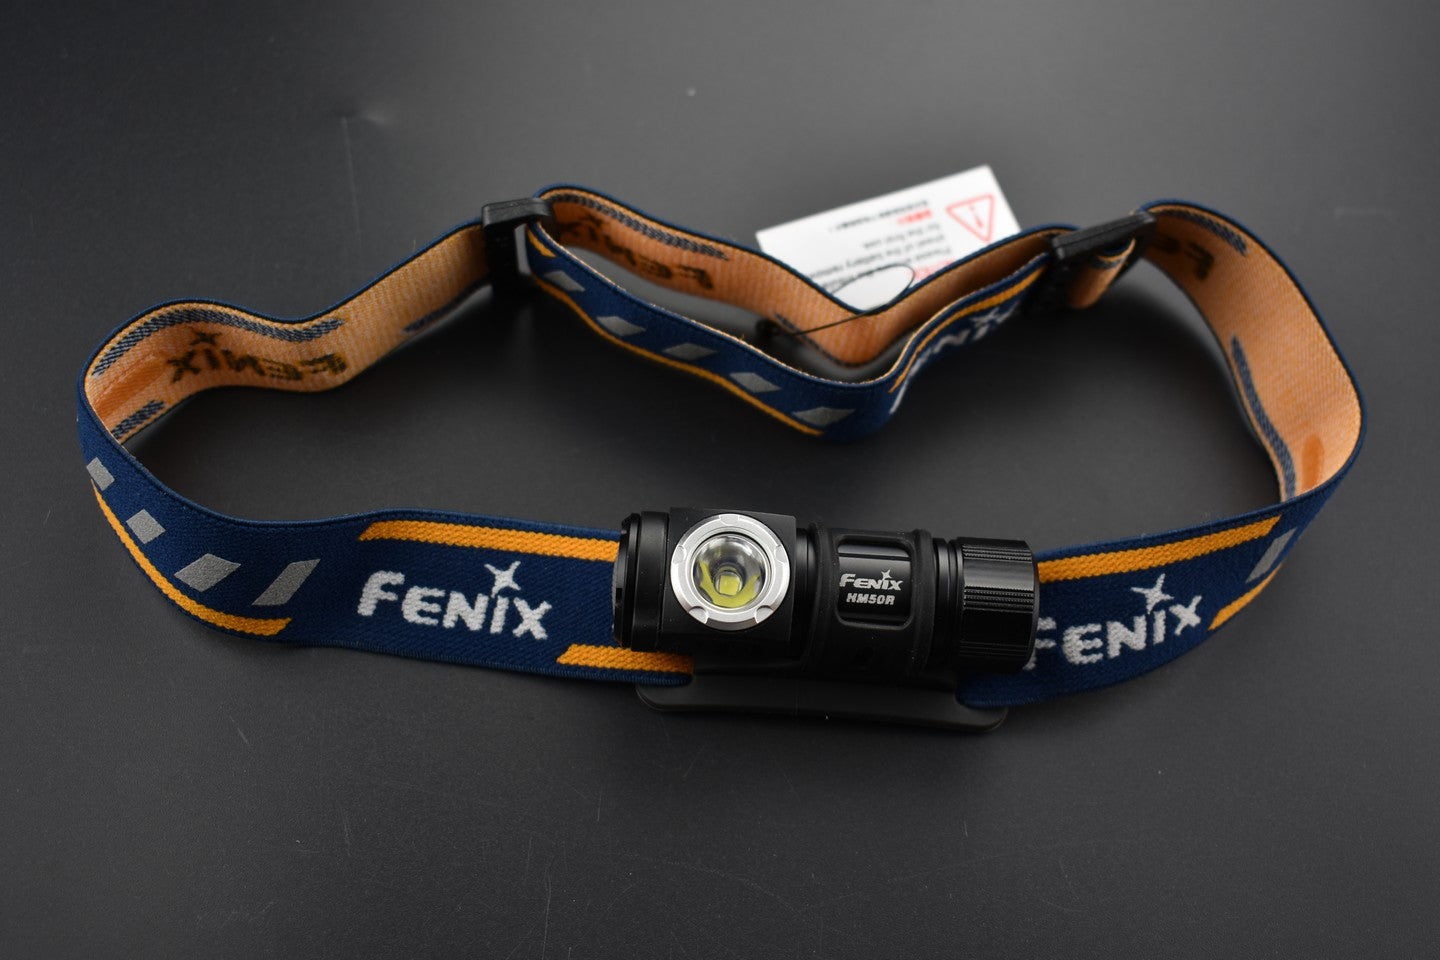 Fenix occasion - OCF153 HM50R - Revendeur Officiel Lampes FENIX depuis 2008 | Votre Boutique en ligne FENIX®